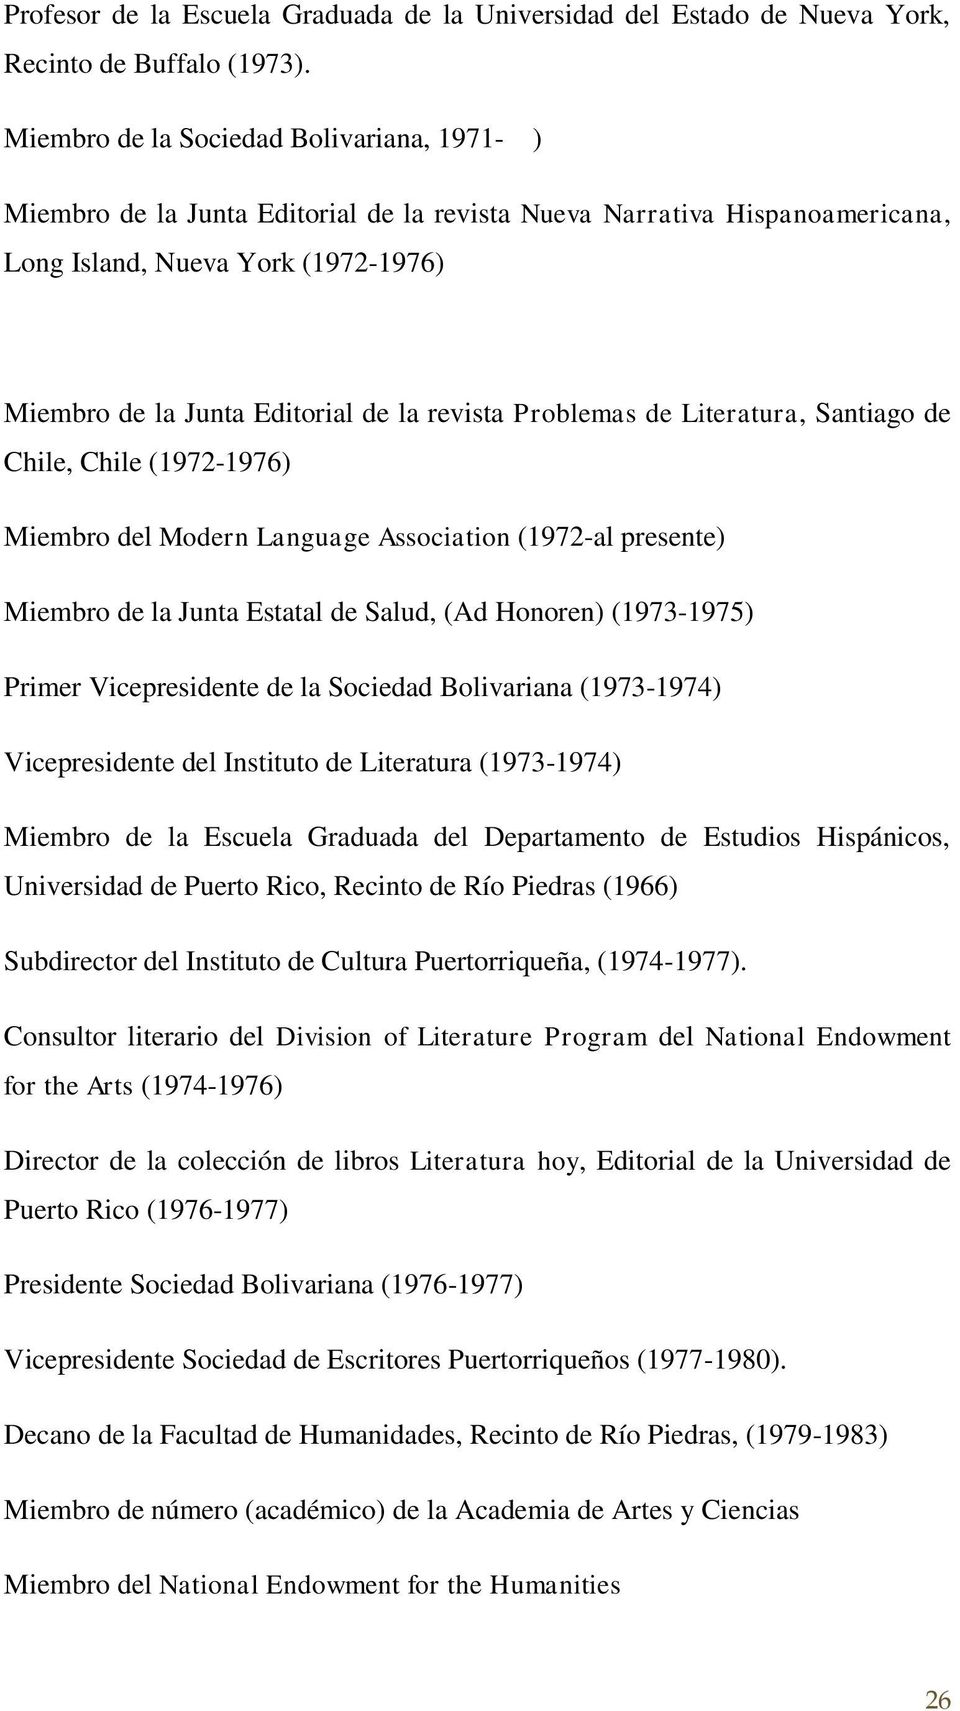 revista Problemas de Literatura, Santiago de Chile, Chile (1972-1976) Miembro del Modern Language Association (1972-al presente) Miembro de la Junta Estatal de Salud, (Ad Honoren) (1973-1975) Primer